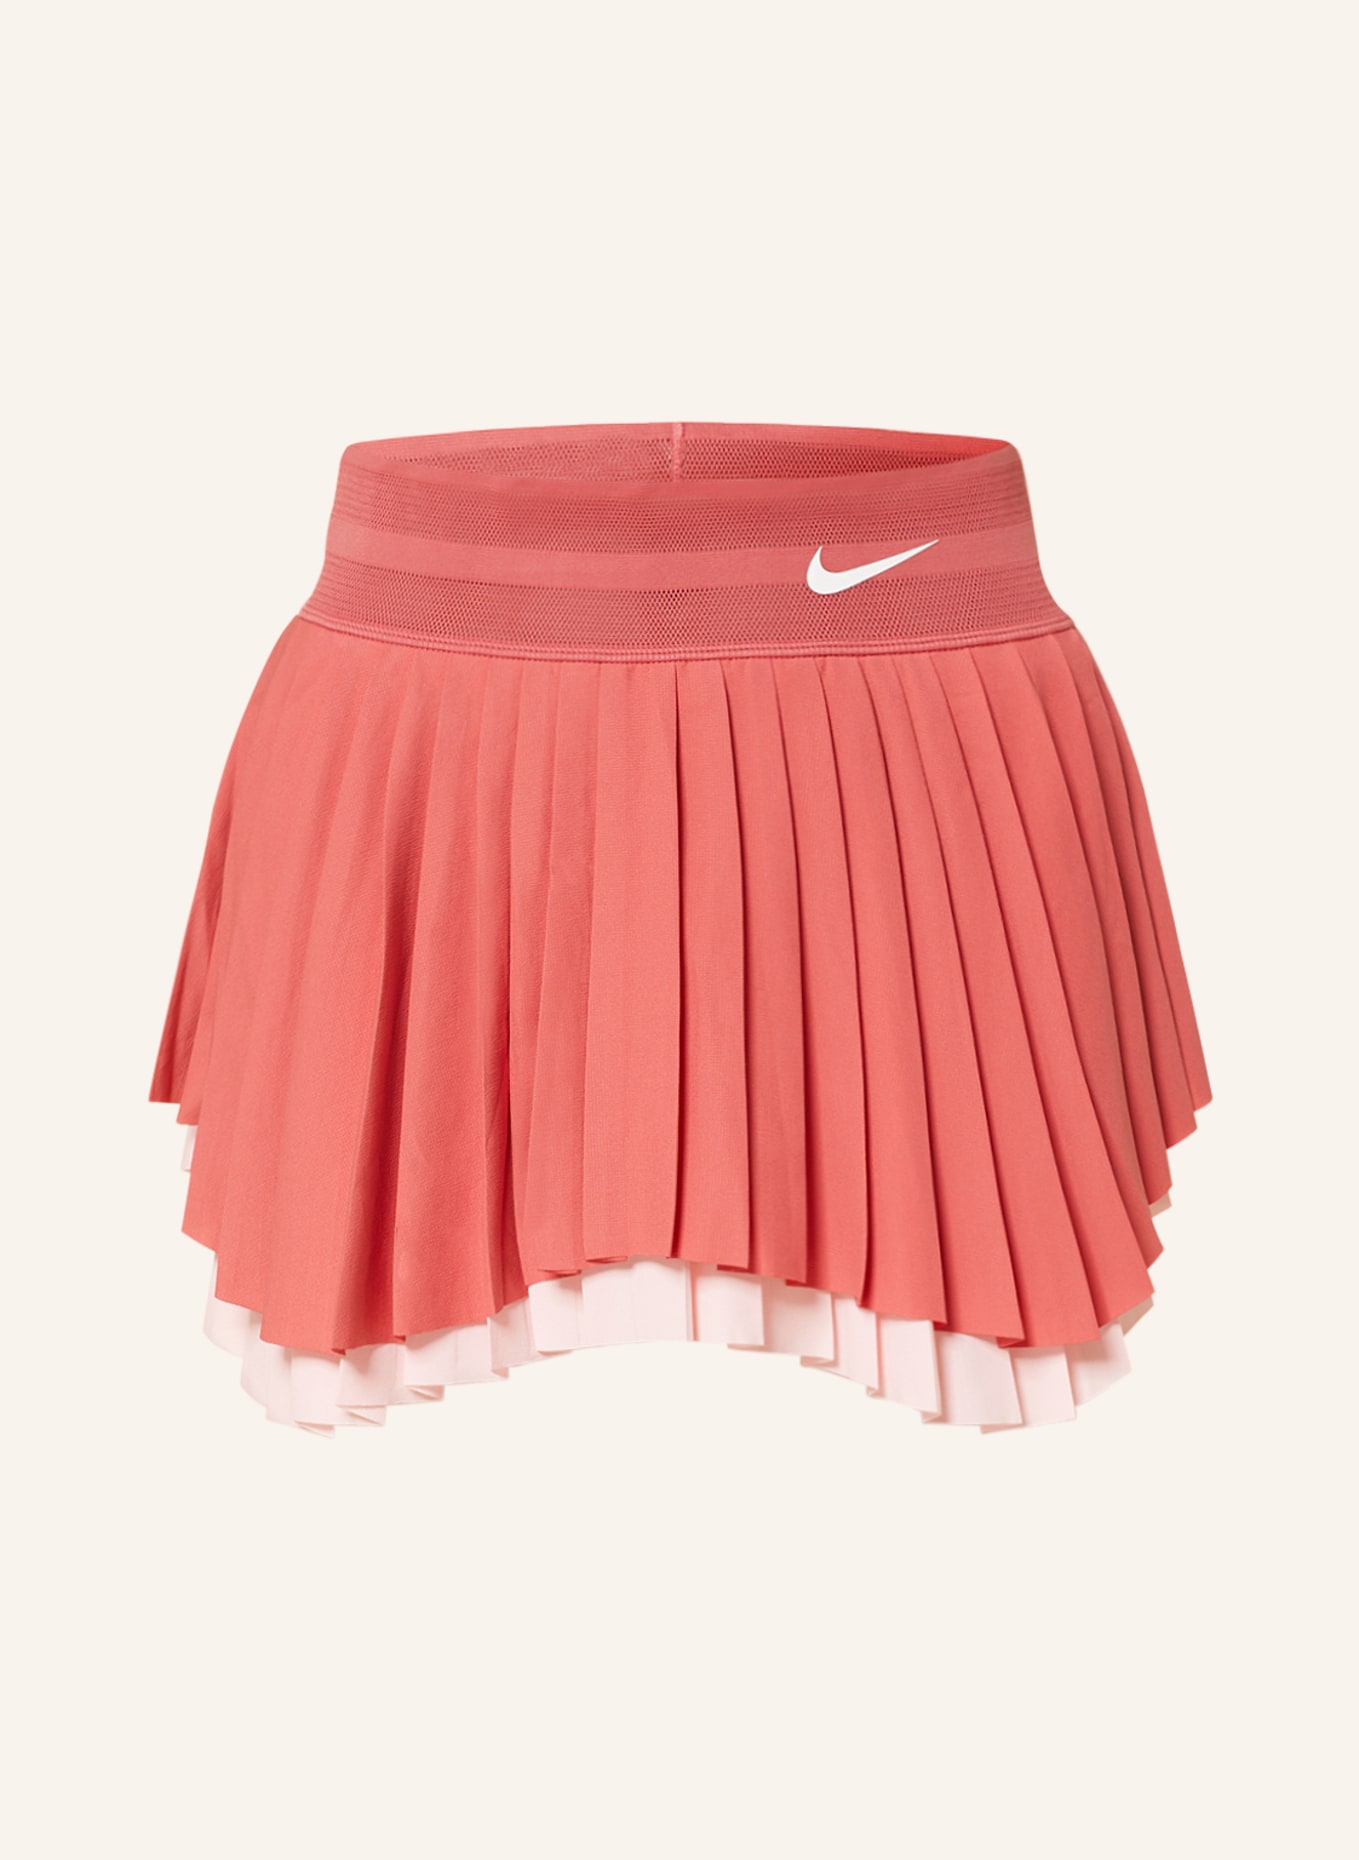 Nike Tennisrock COURT DRI-FIT, Farbe: LACHS/ ROSA (Bild 1)